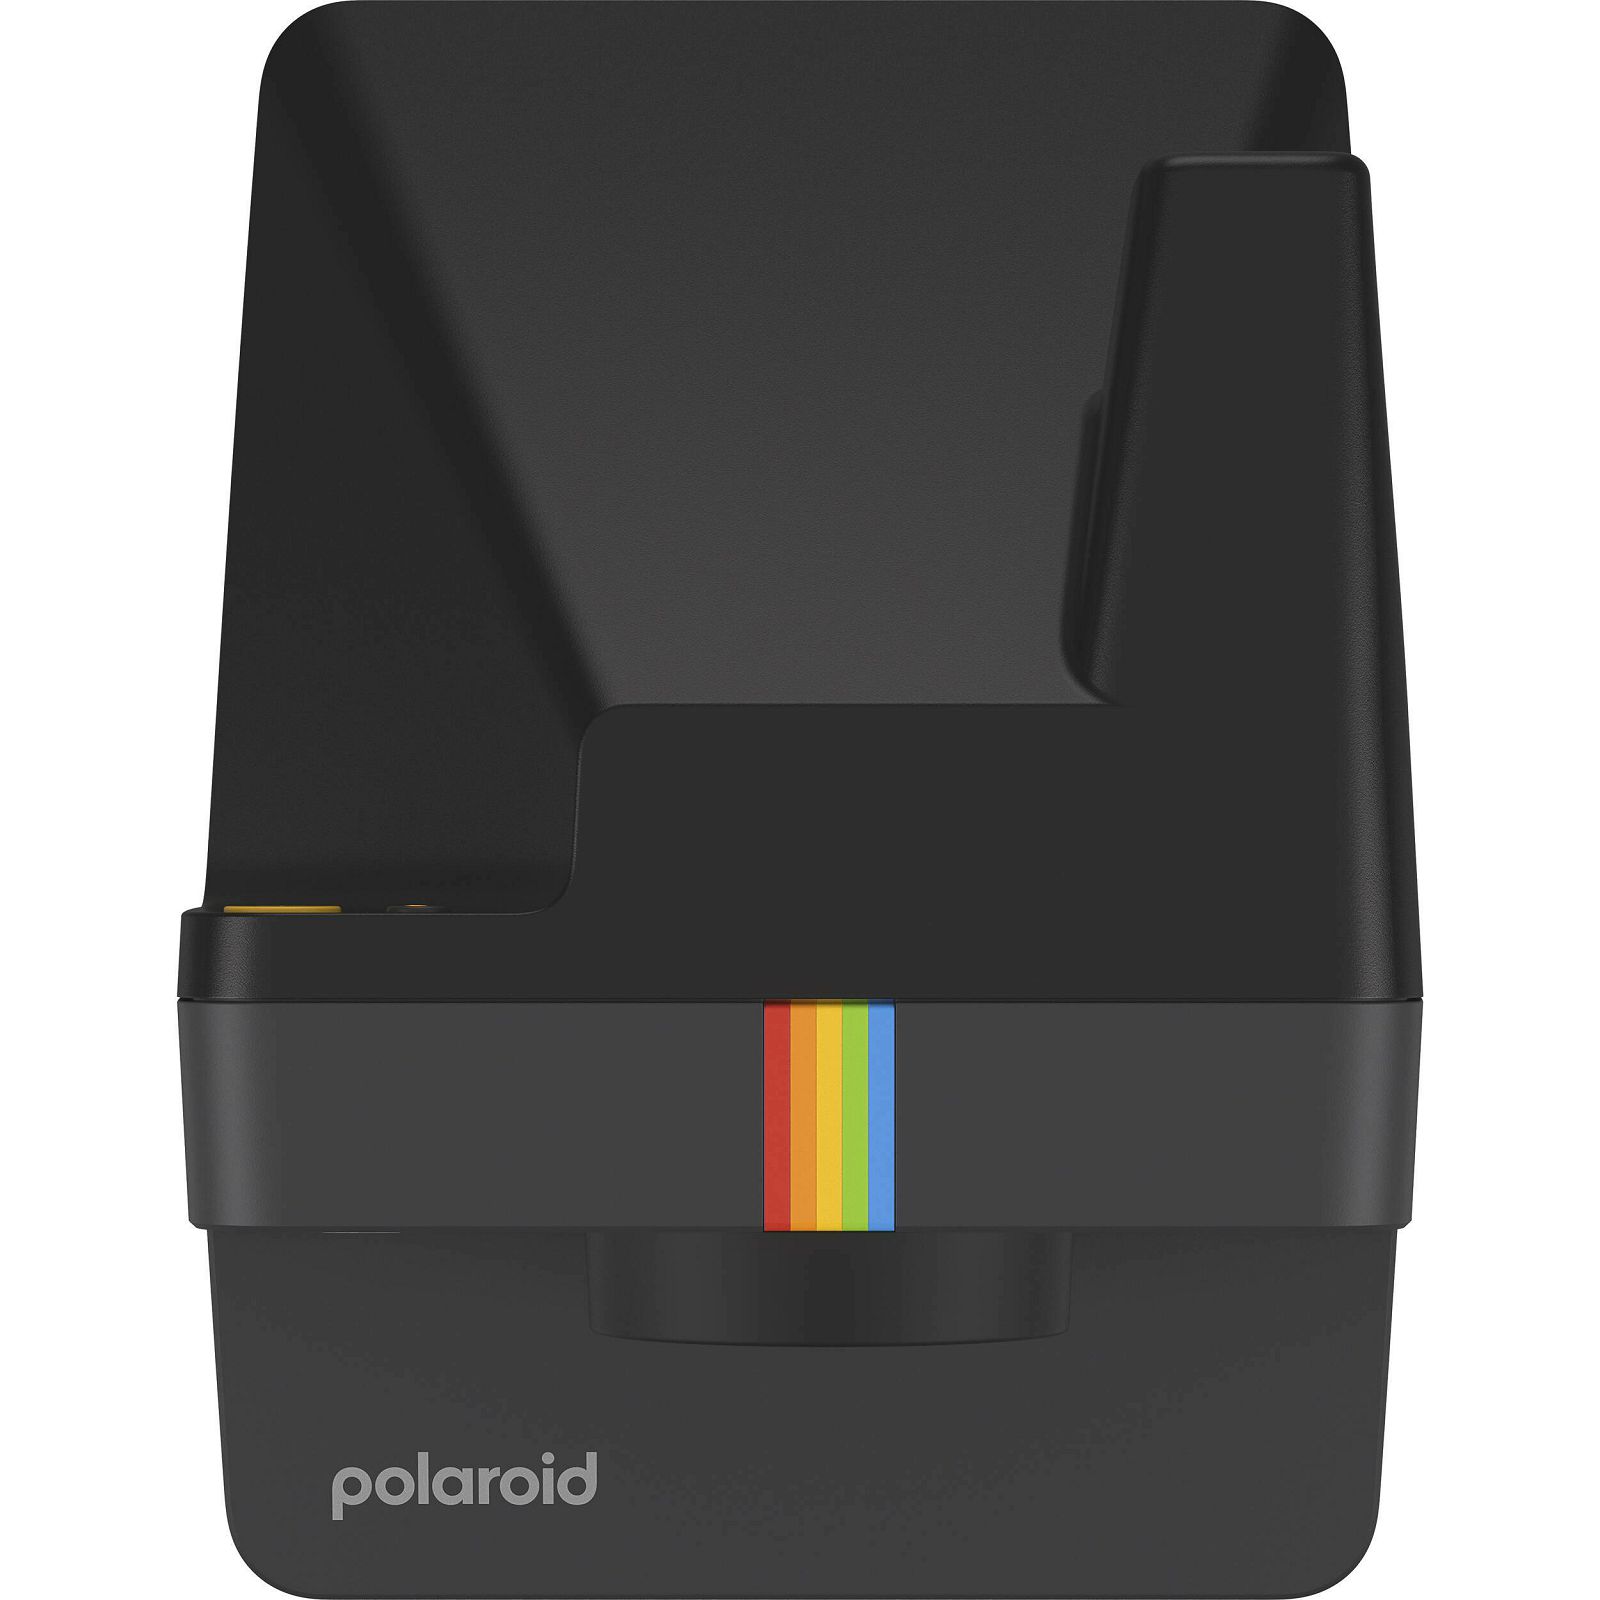 Polaroid Originals Now 2 Black crni instant fotoaparat s trenutnim ispisom fotografije (009095) 